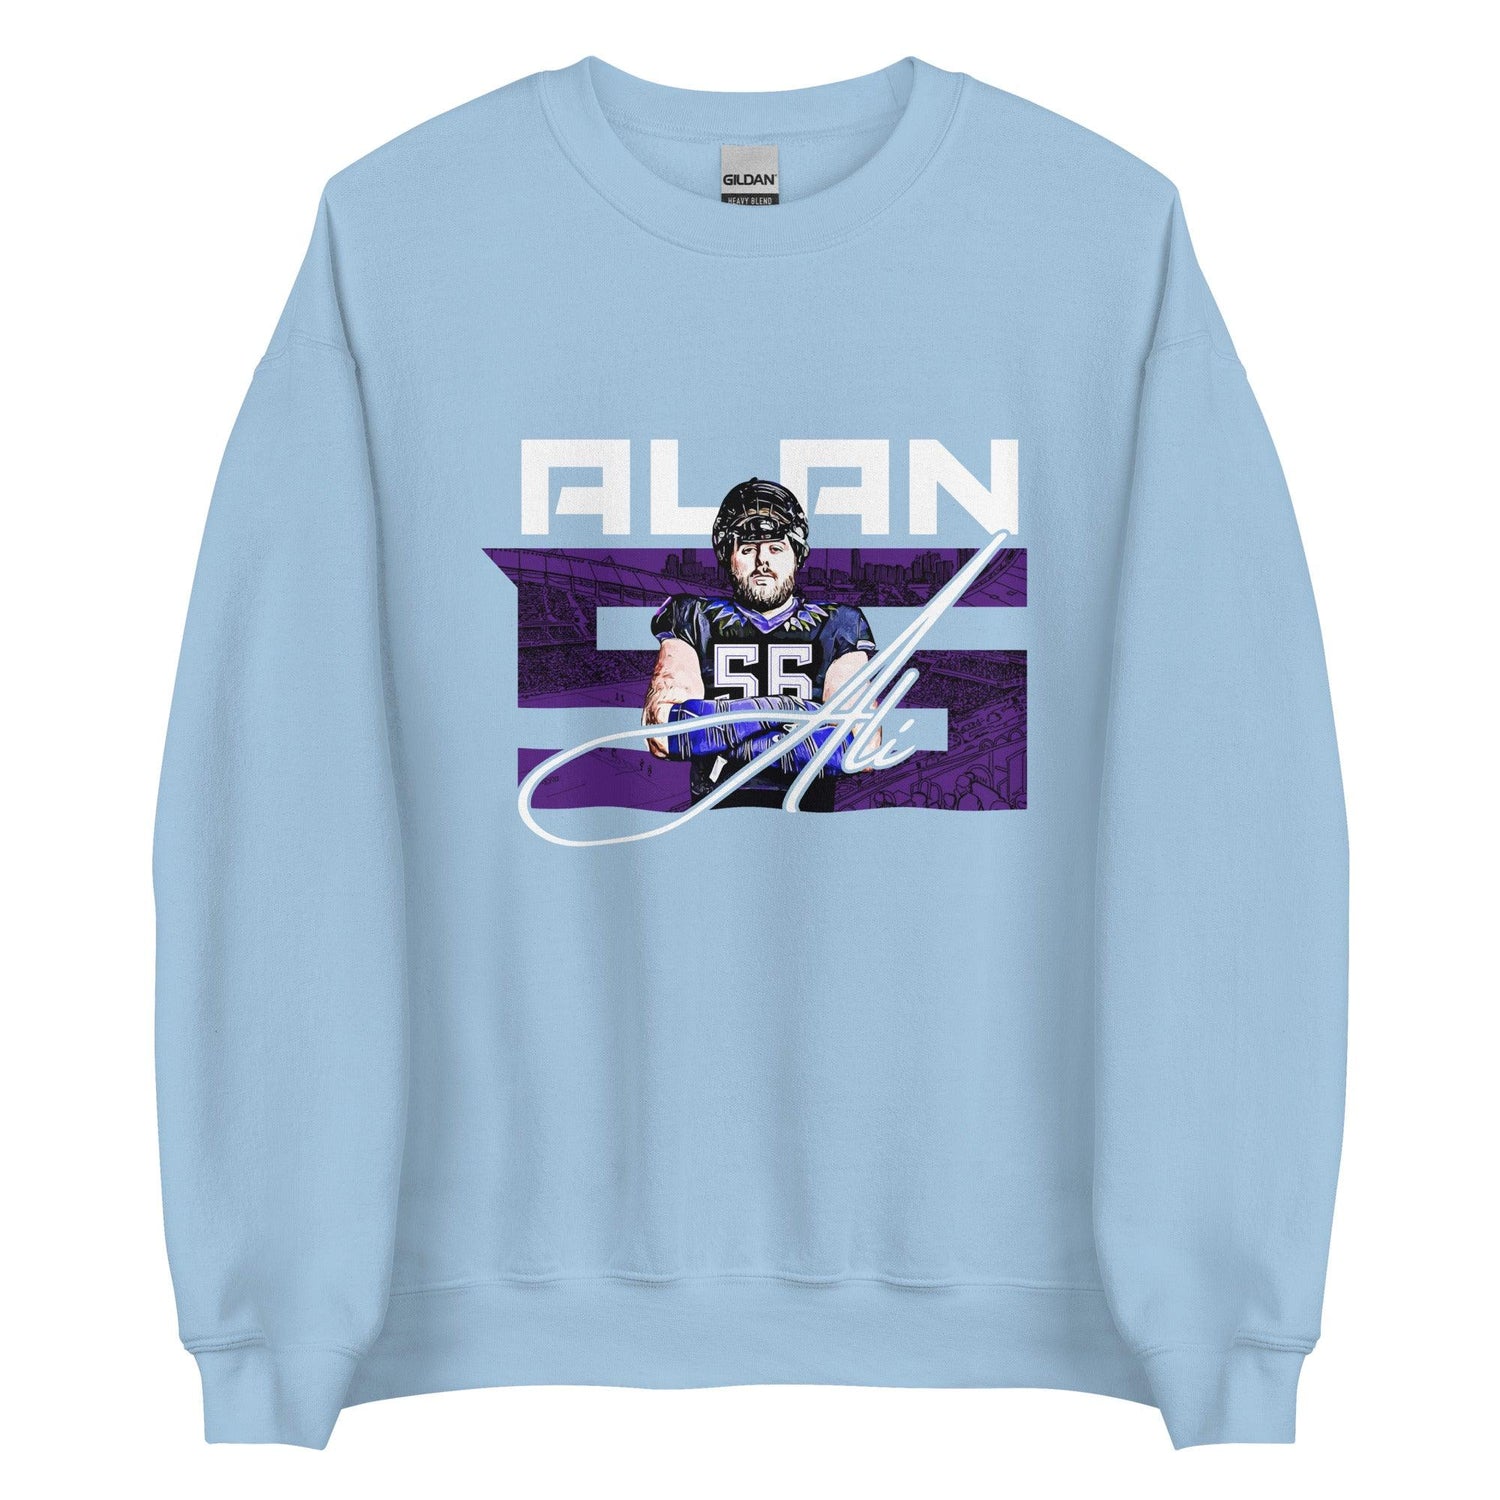 Alan Ali "56" Sweatshirt - Fan Arch